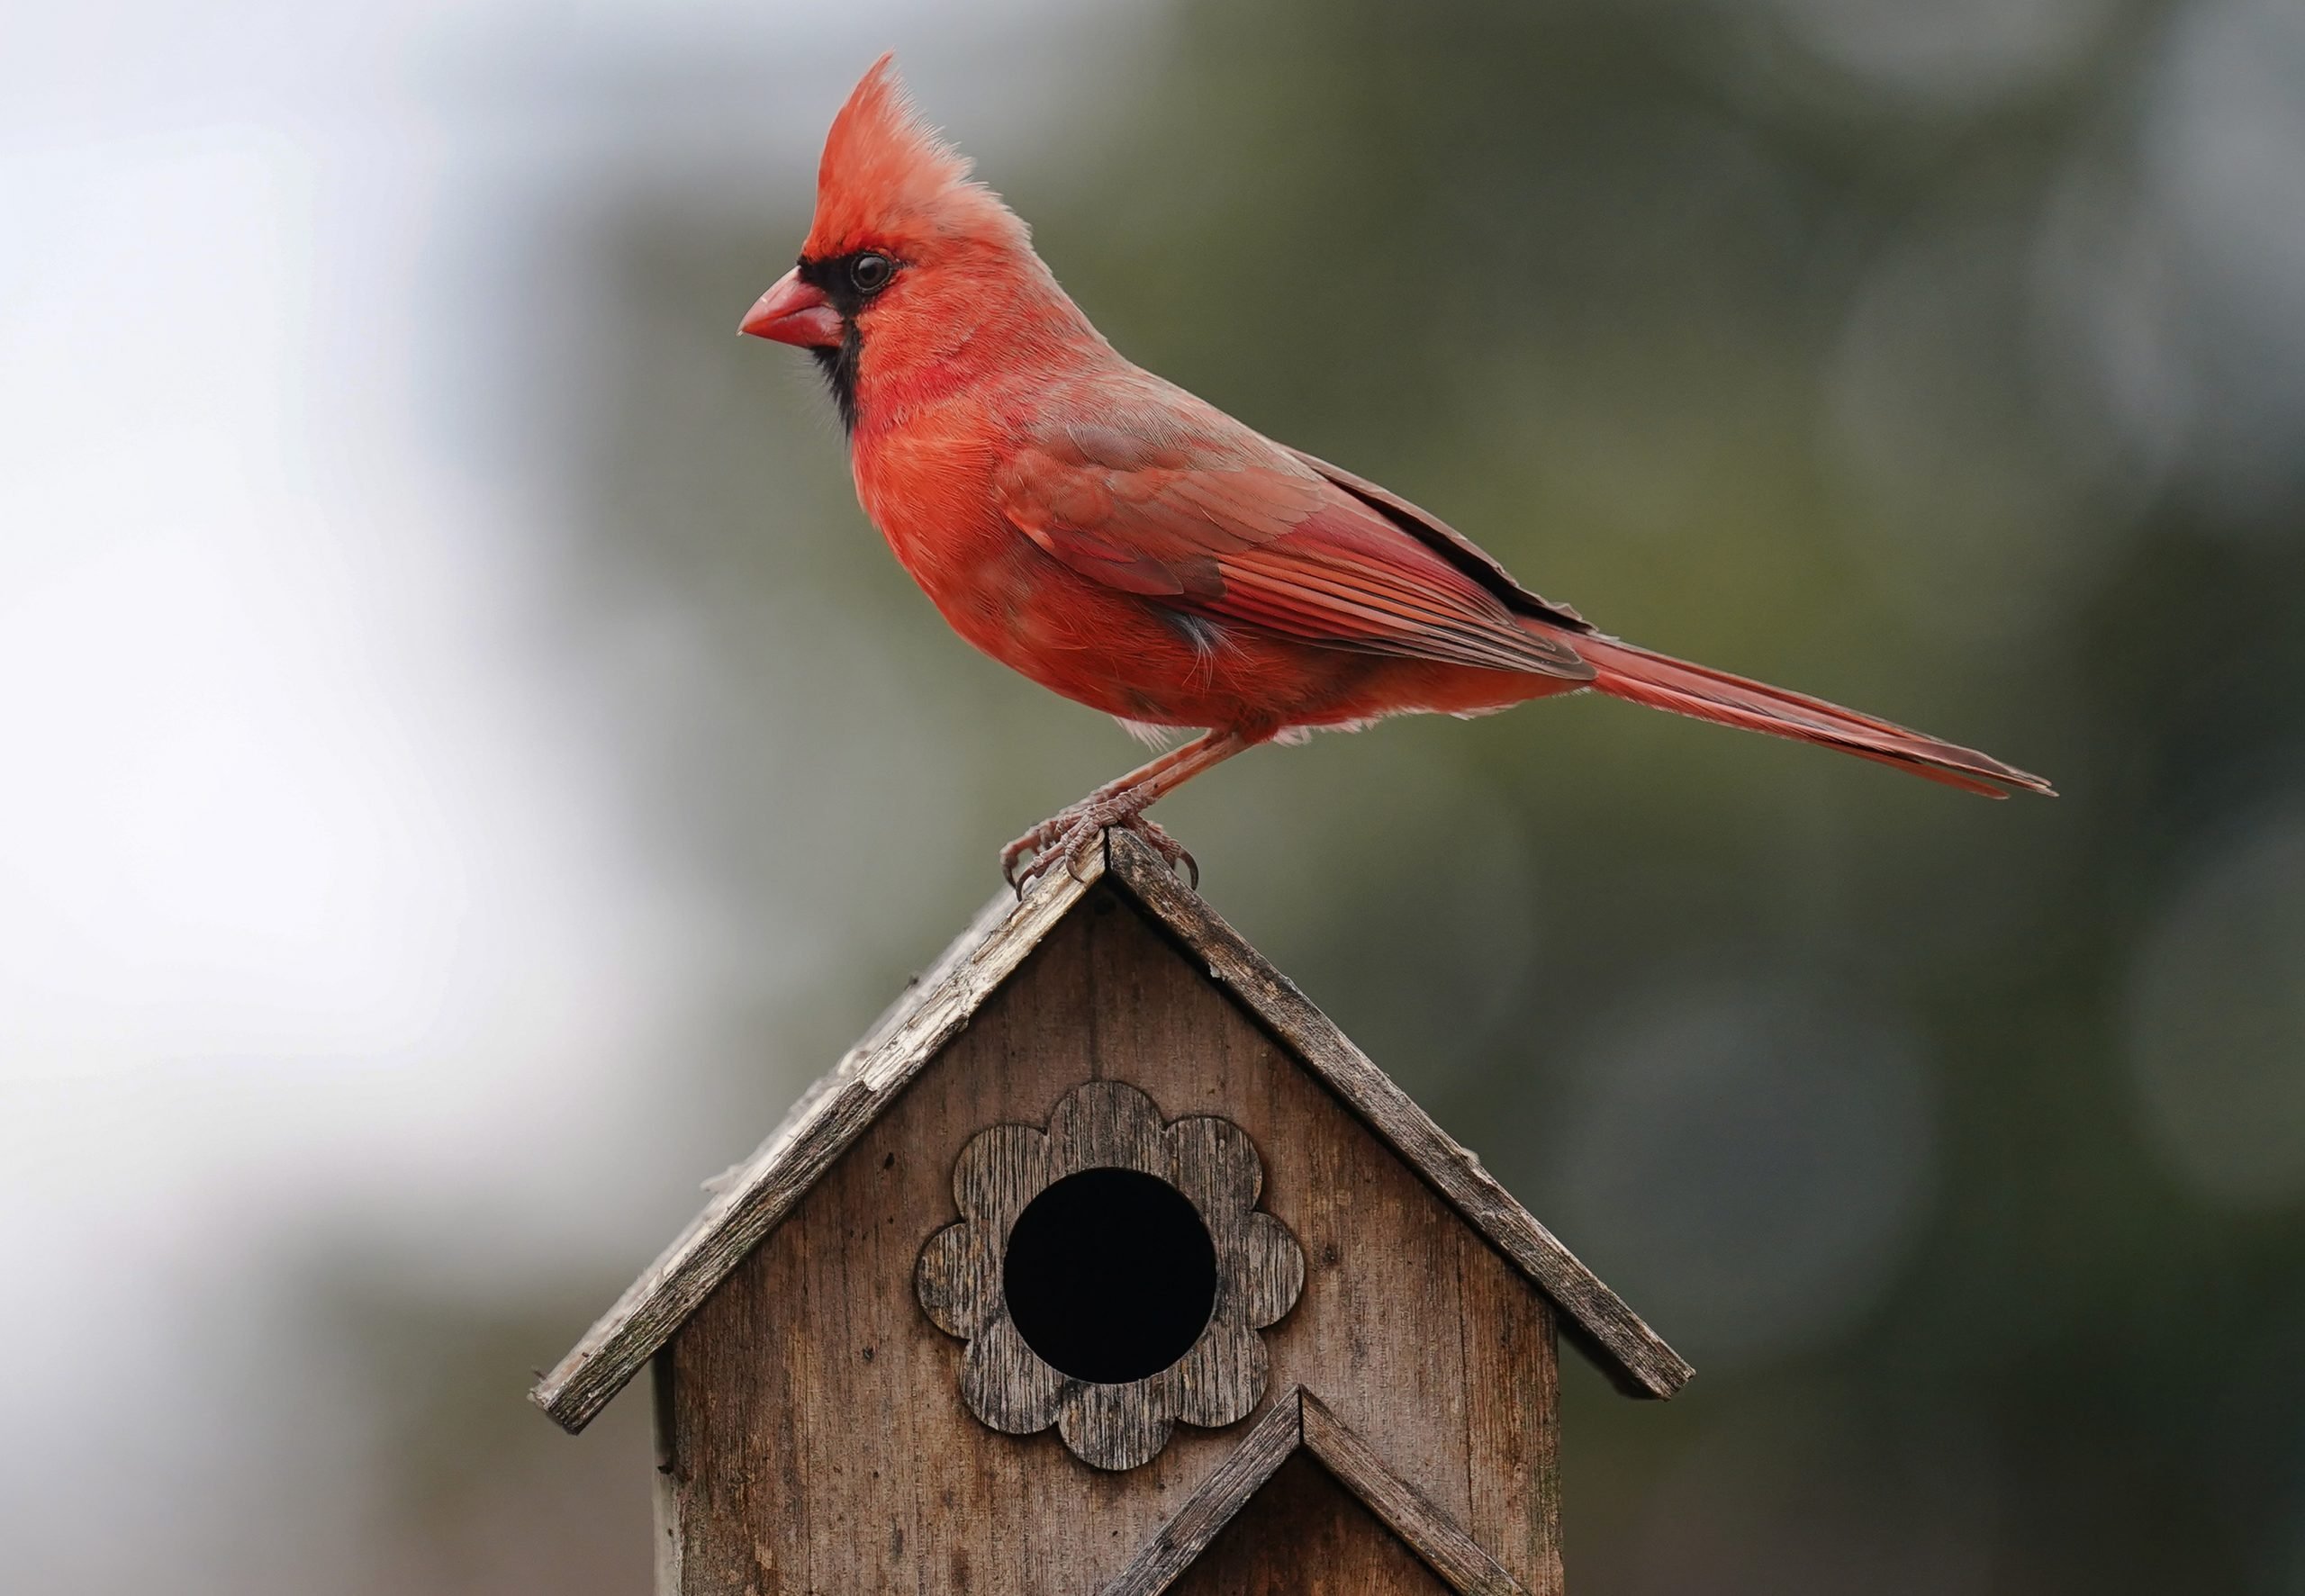 Respuestas a sus preguntas sobre la Casa del Pájaro Cardenal